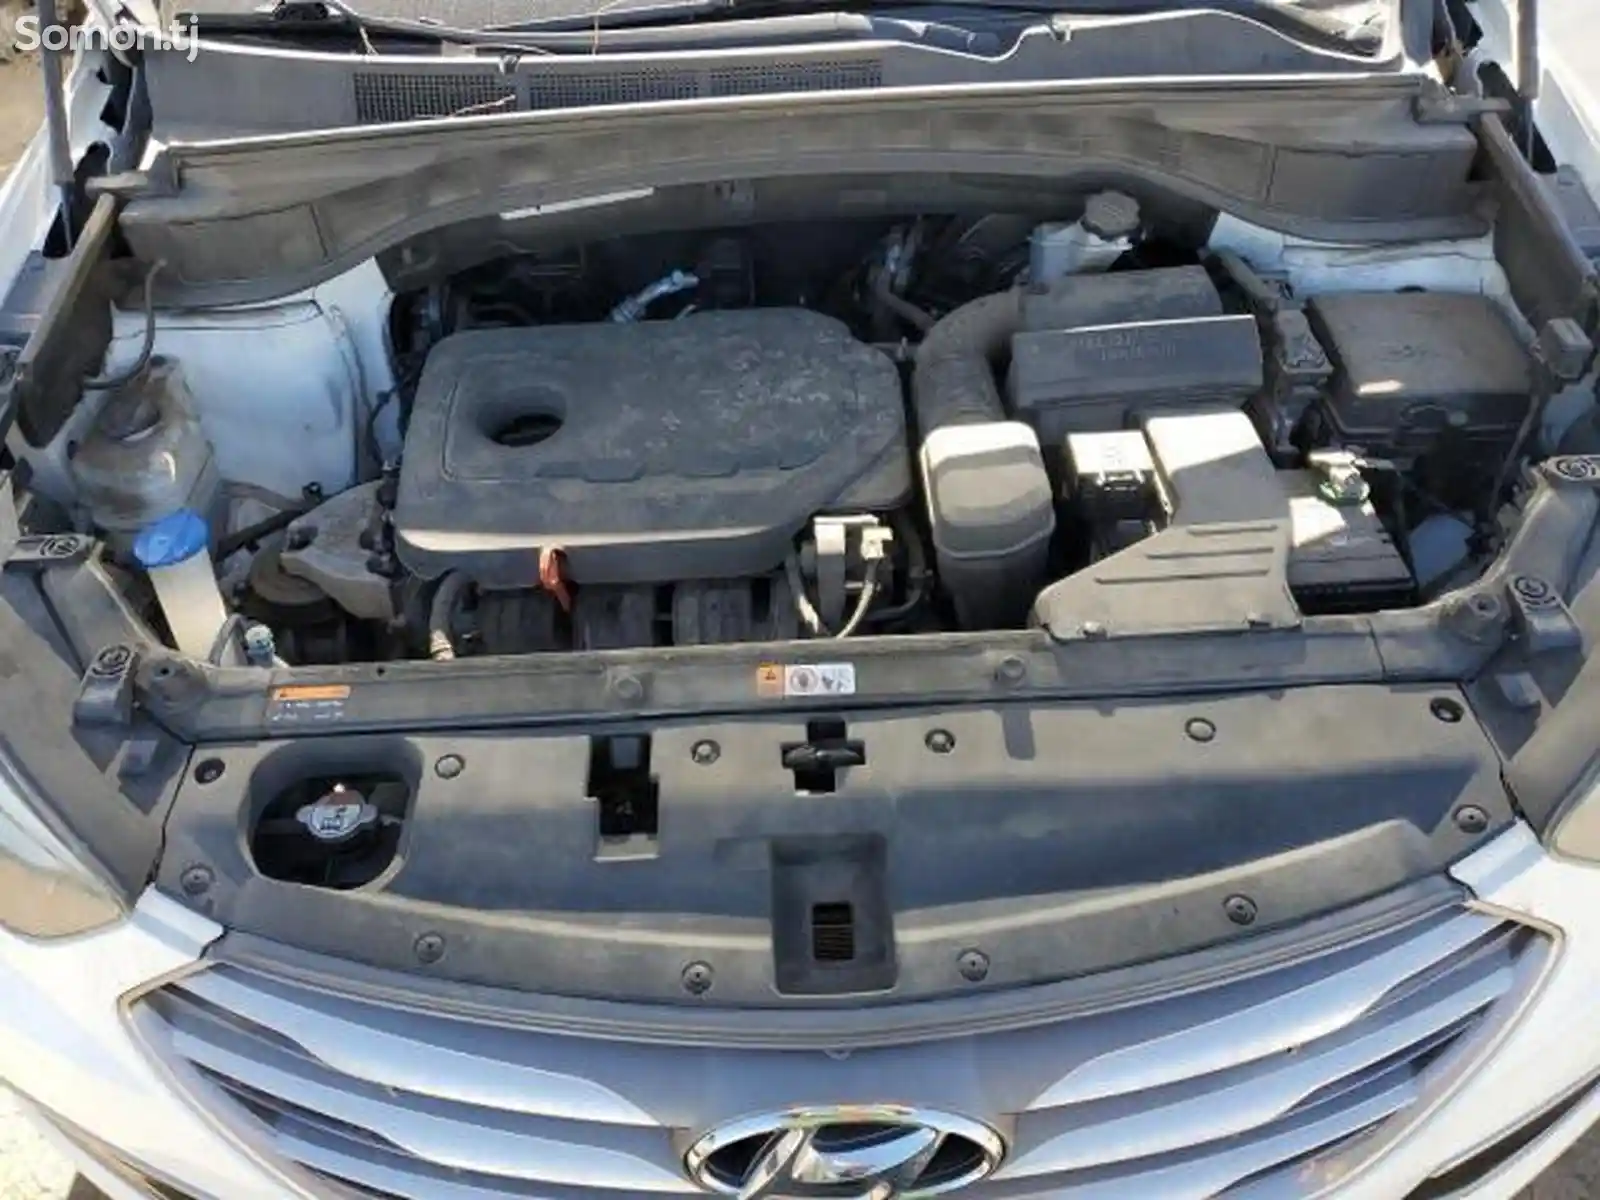 Hyundai Santa Fe, 2016-10